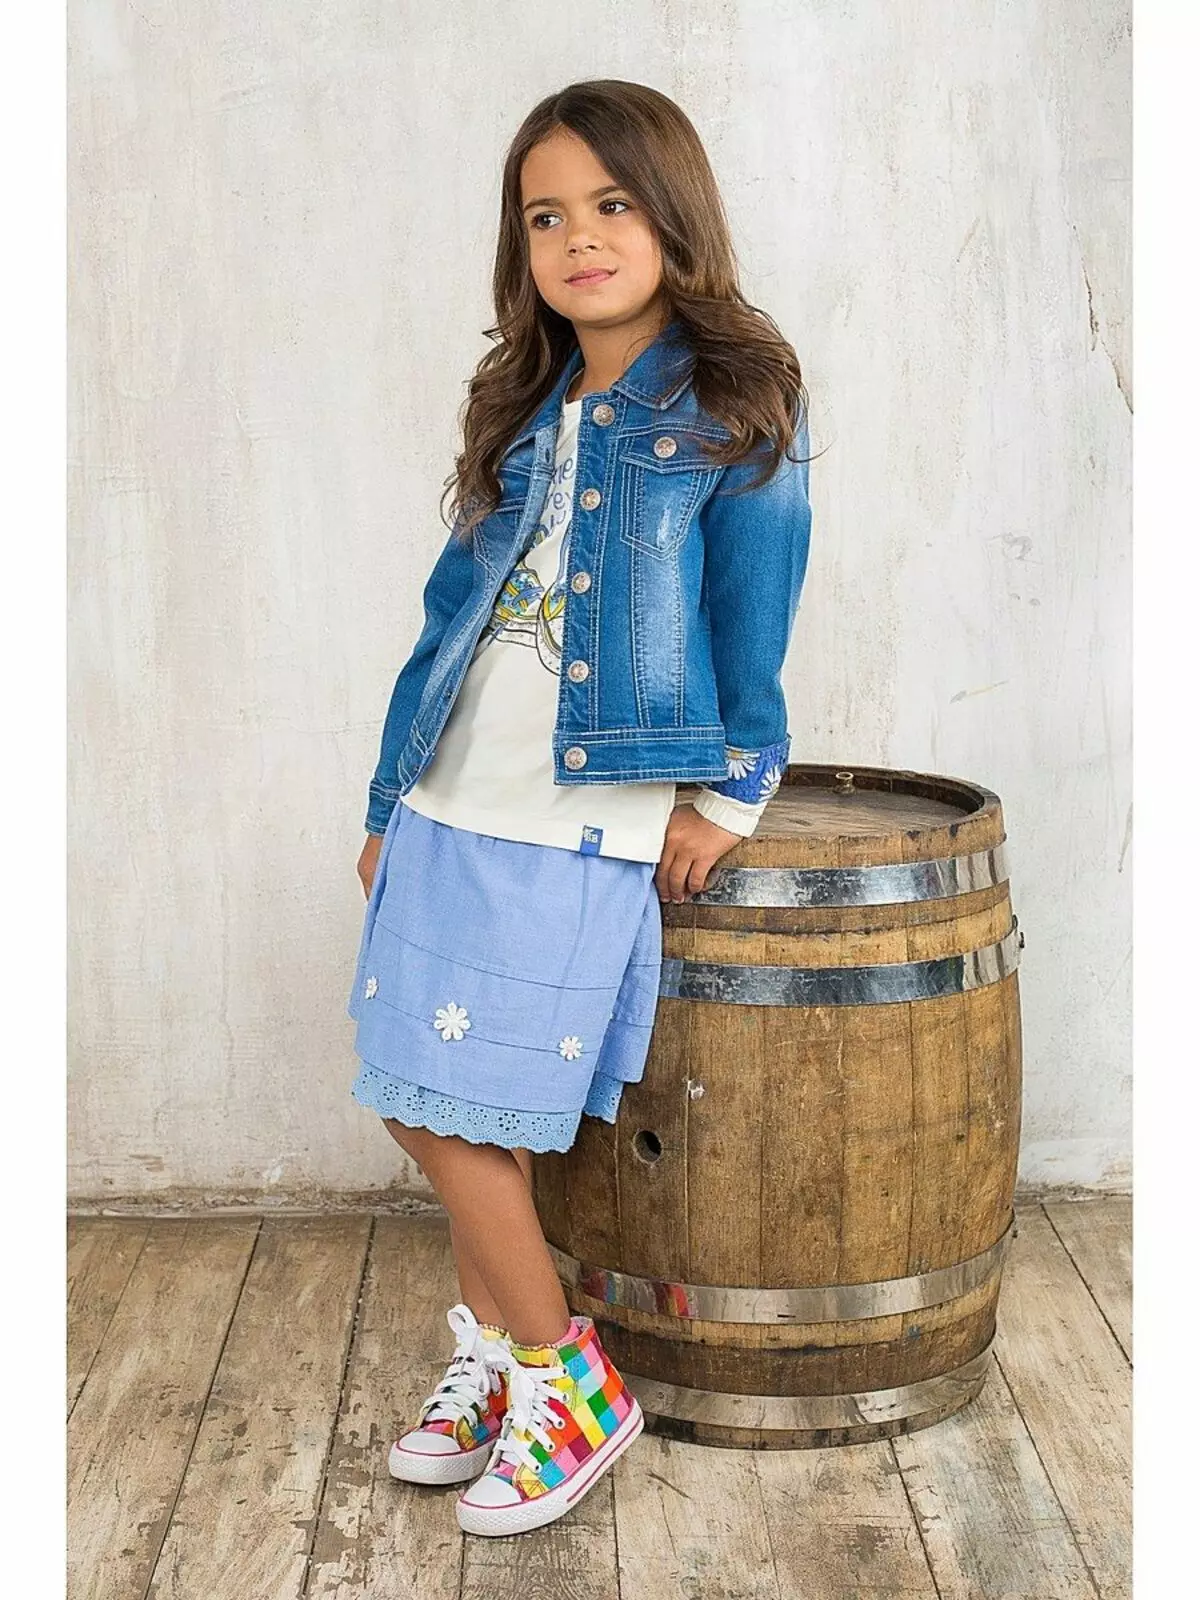 Jaqueta Denim infantil para uma menina (49) Foto: O que vestir, padrões de jeans antigos 14394_26